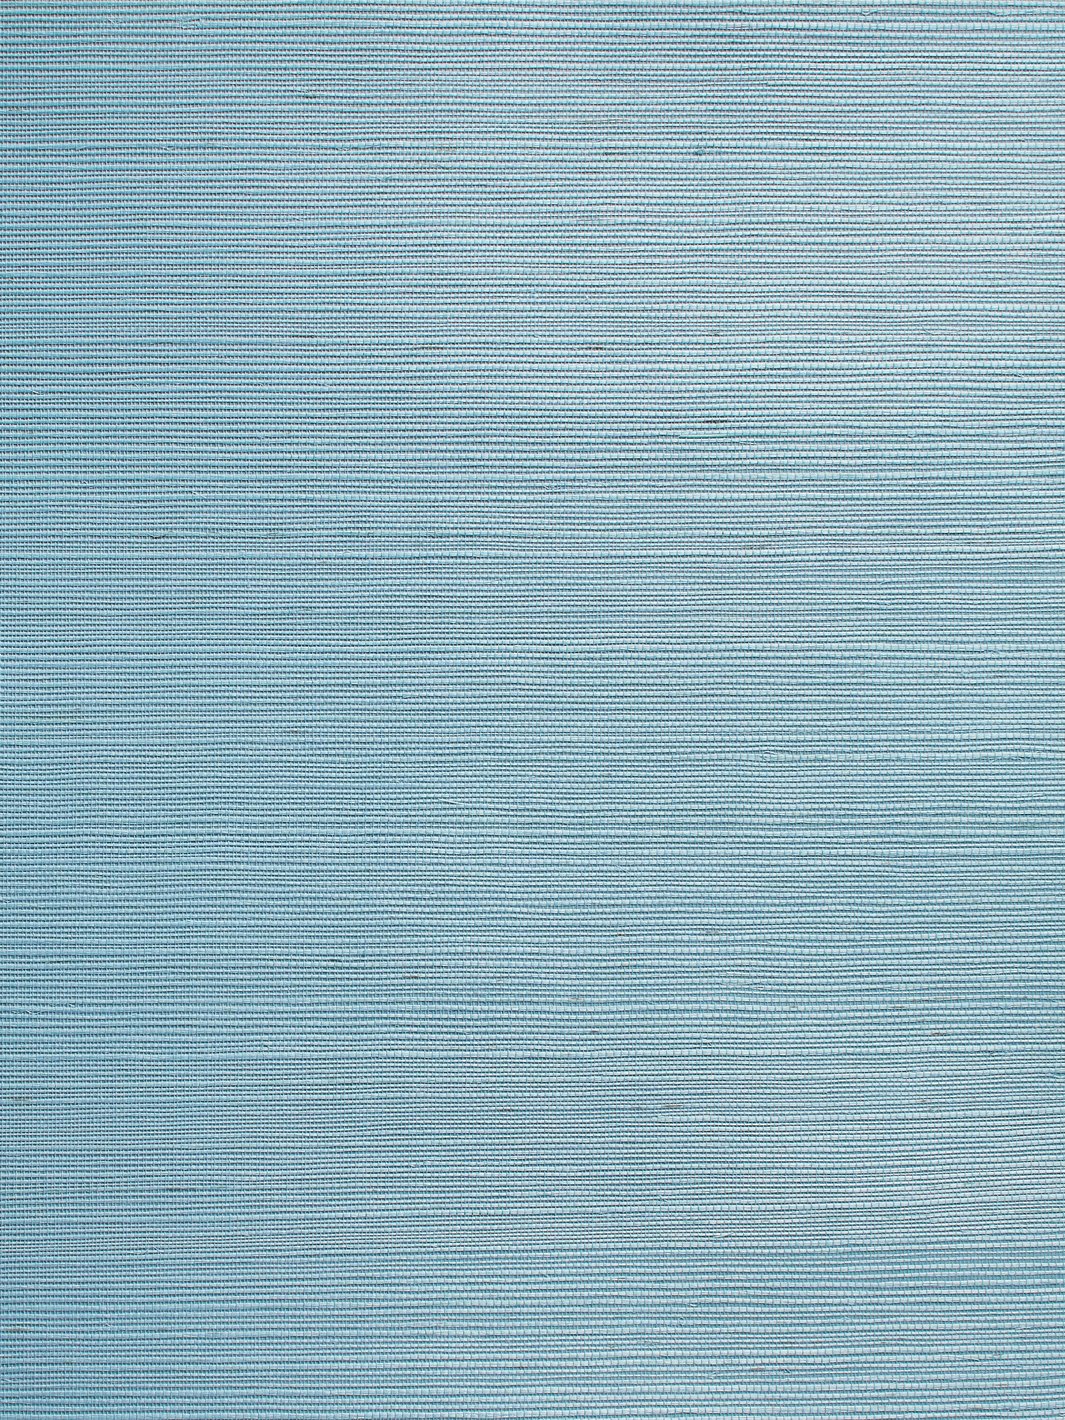 'Solid Grasscloth' Wallpaper by Wallshoppe - Cornflower